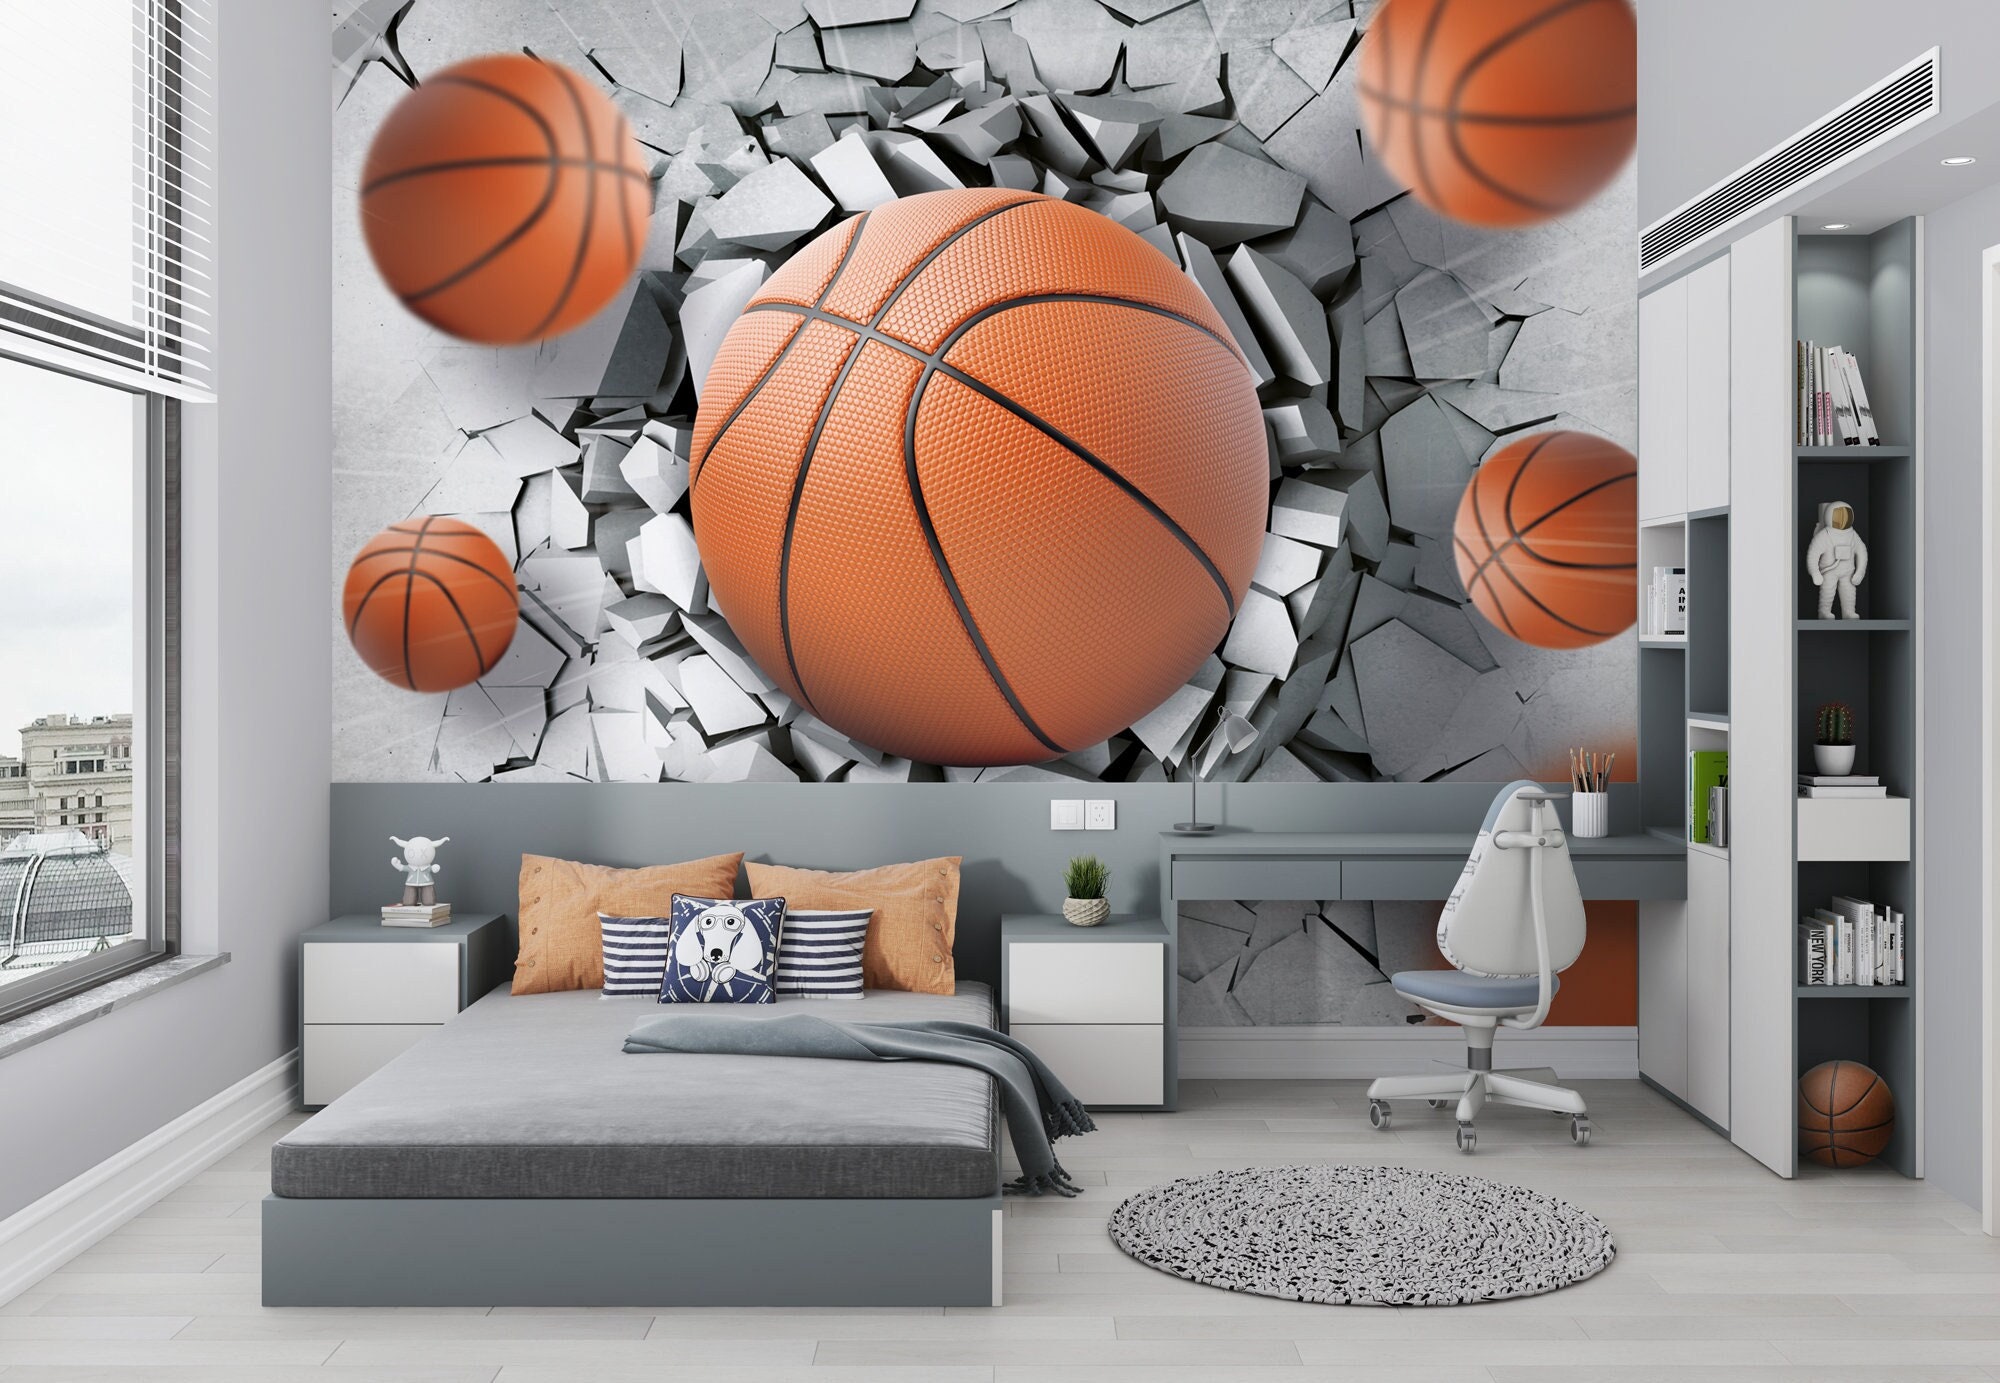 Fond d'écran de basket-ball 3D, affiche murale d'art mural 3D, autocollant  esthétique de basket-ball adhésif, bâton de peau réaliste réaliste 3D murale  nouvelle maison -  Canada